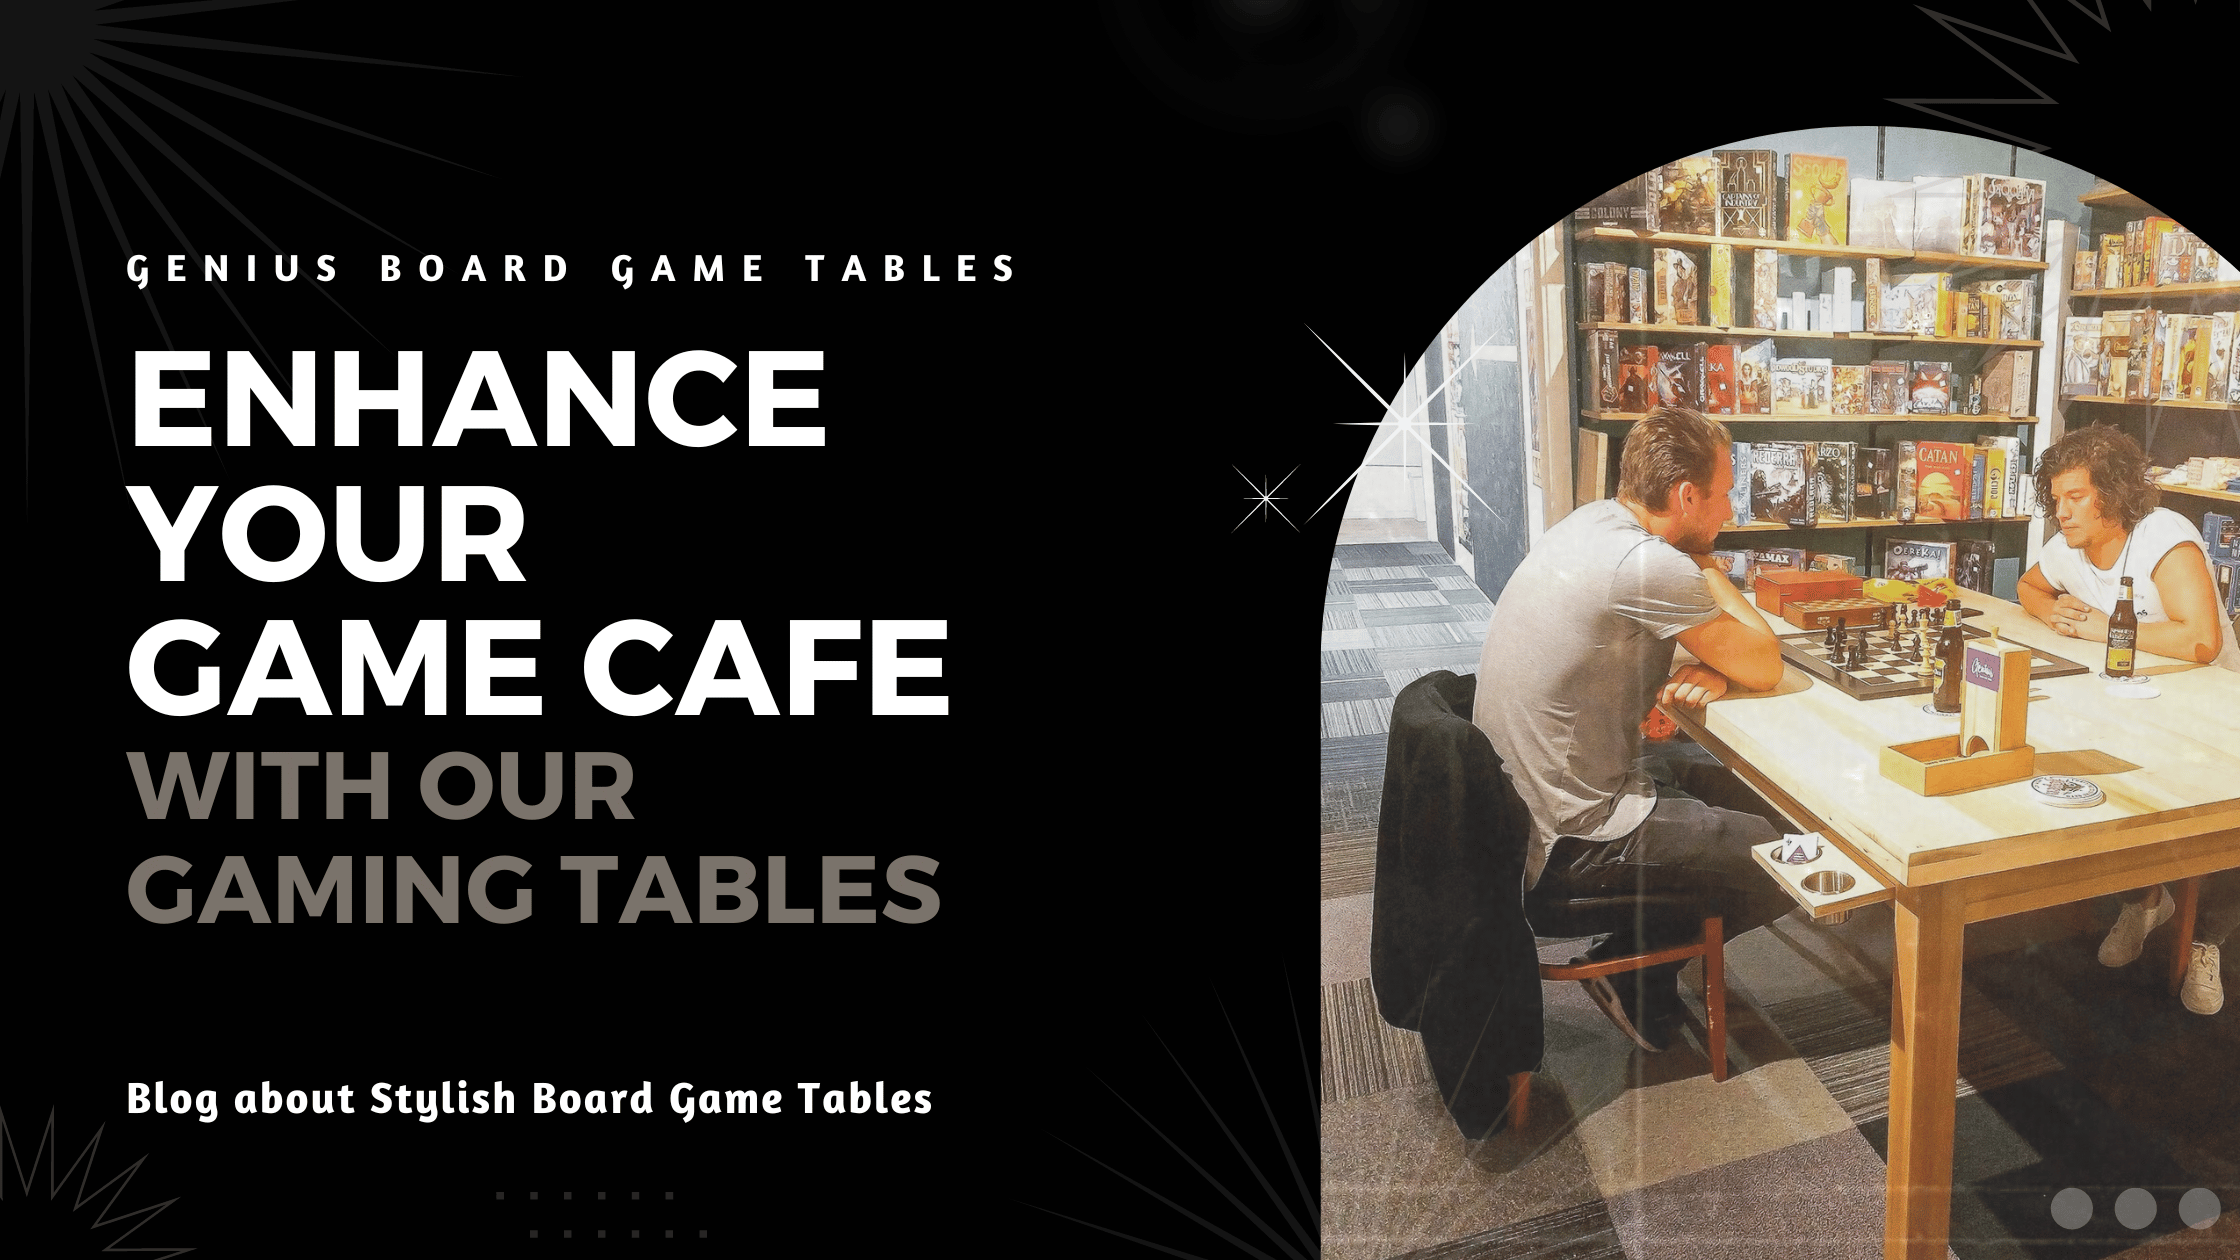 Board game café tables